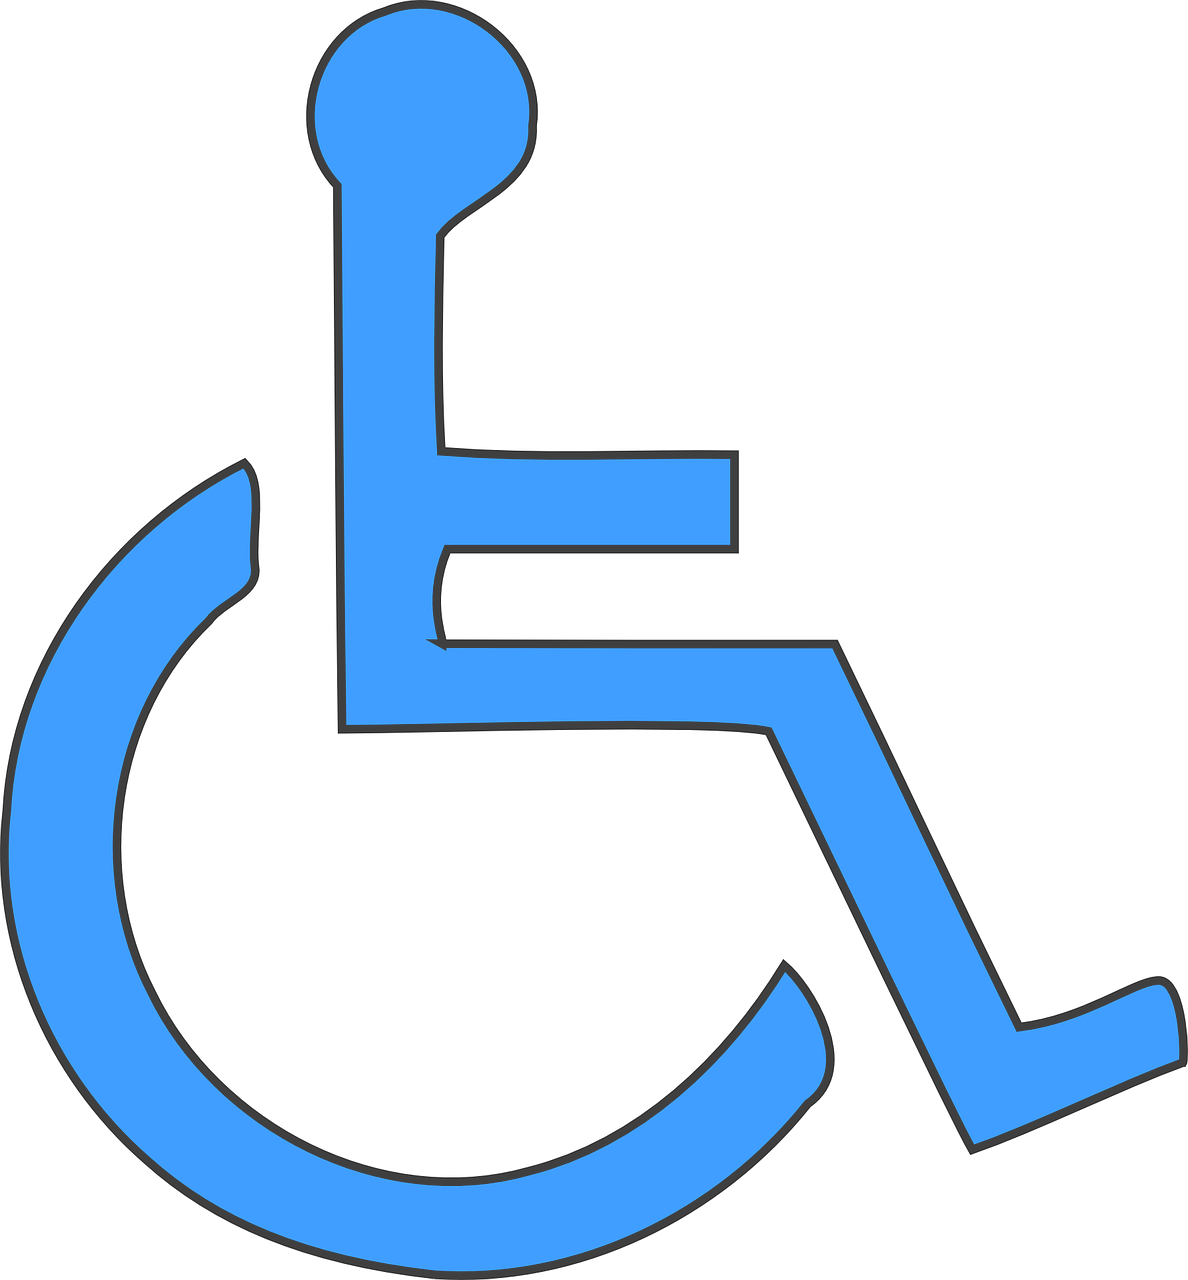 Gezinshuis Voor elkaar. instelling gehandicaptenzorg verstandelijk gehandicapten beoordeling